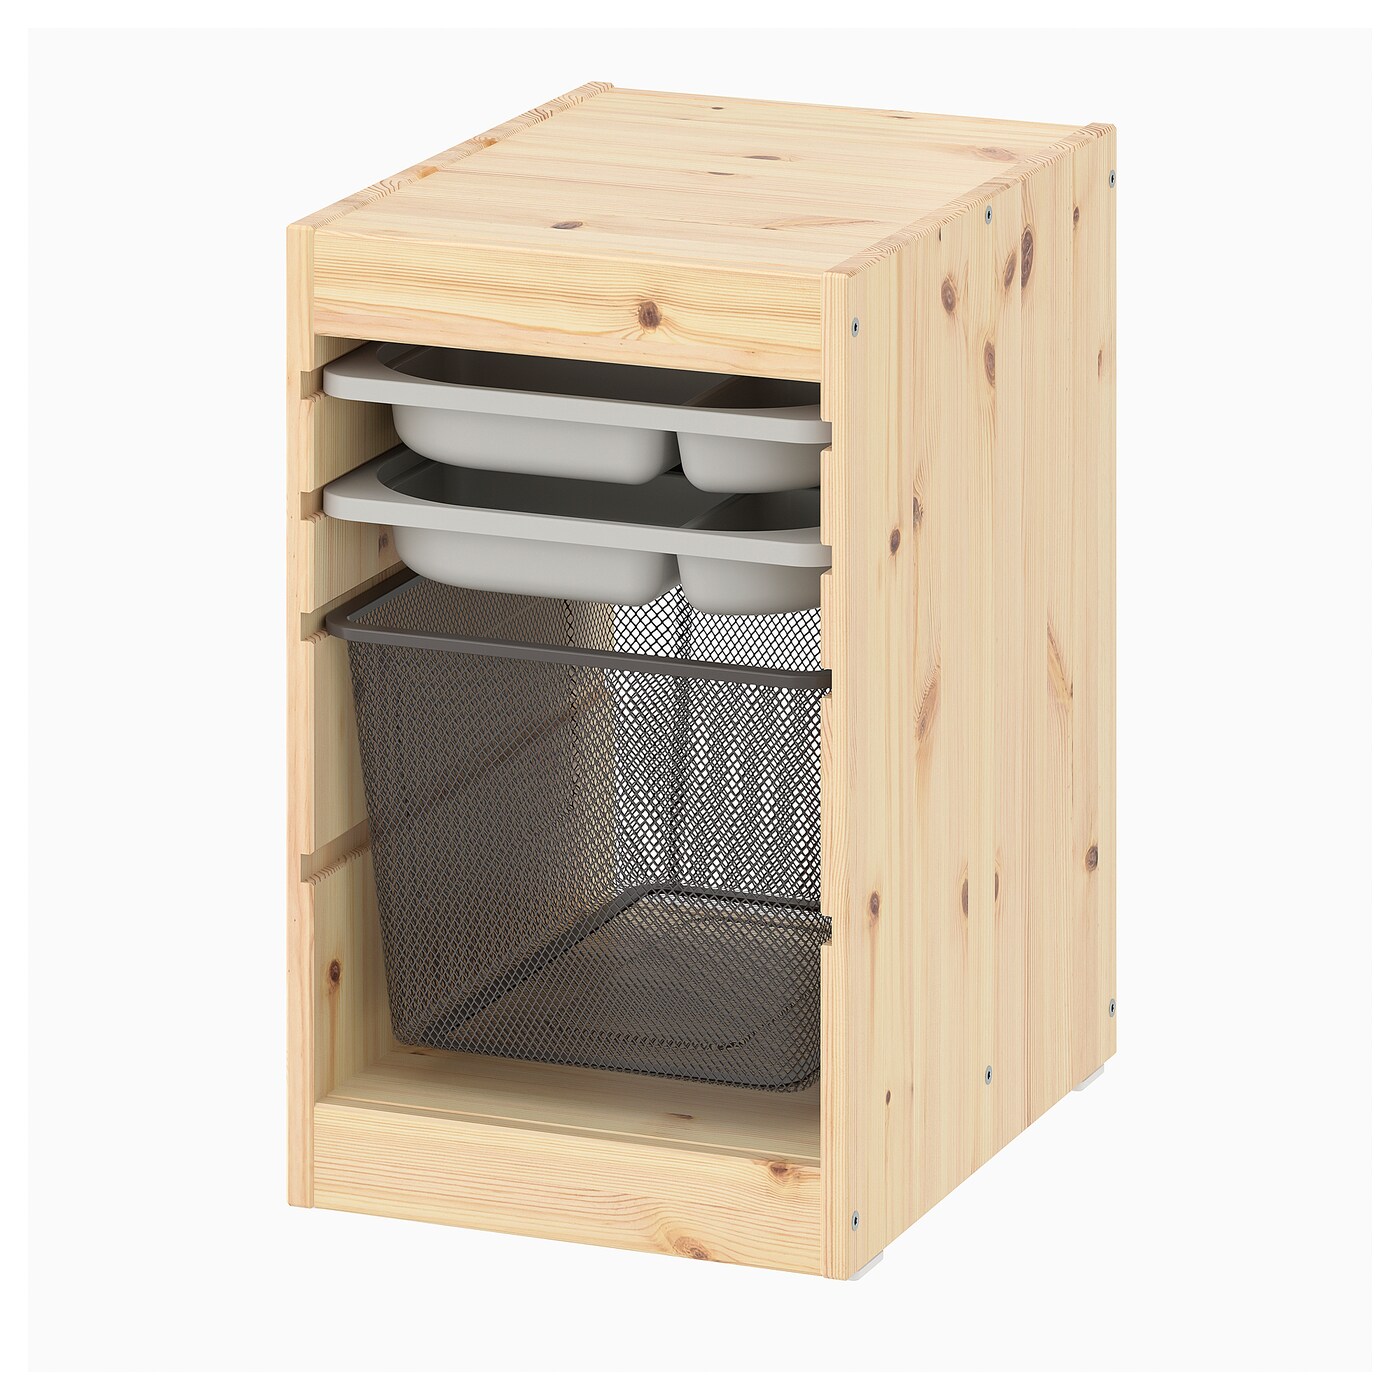 Шкаф для хранения - TROFAST IKEA/ ТРУФАСТ ИКЕА,  32x44x52 см, бежевый